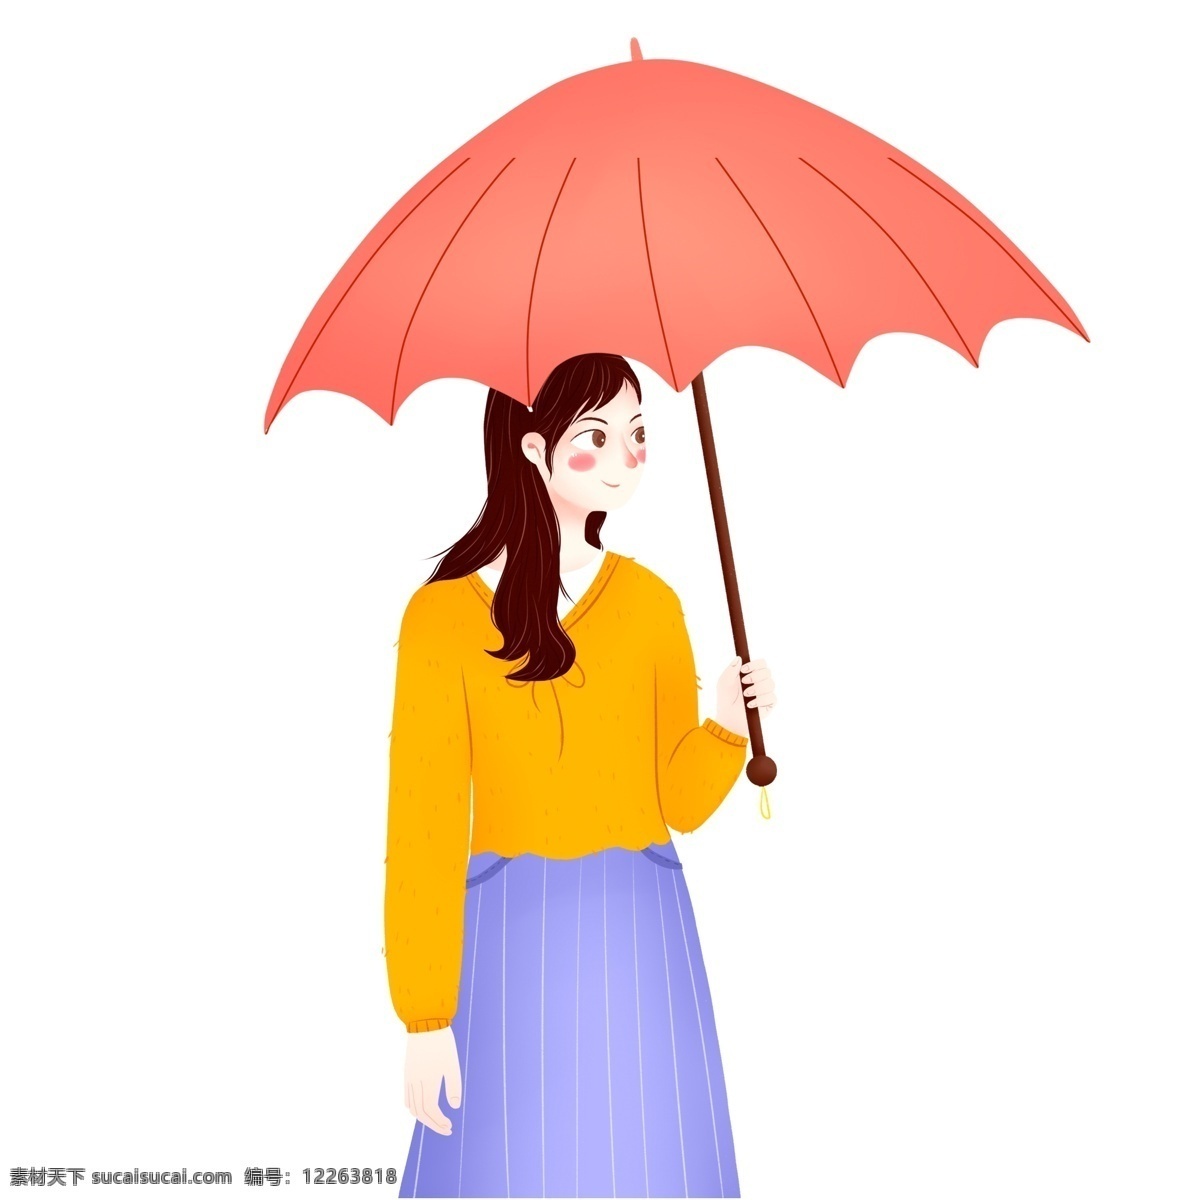 手绘 卡通 撑 红 雨伞 长发 美女 原创 元素 秋天 送别 手绘人物 原创元素 红雨伞 撑着红雨伞 黄衬衣